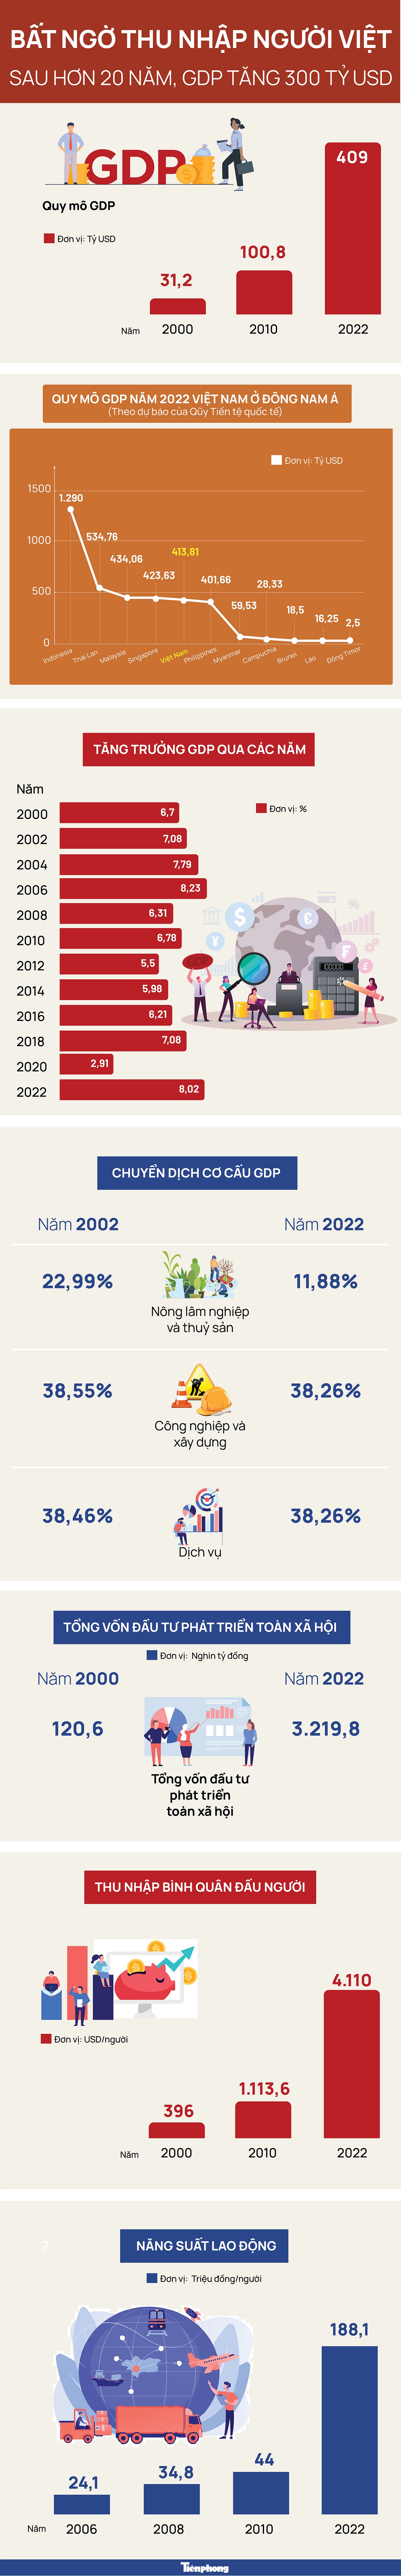 Bất ngờ thu nhập người Việt sau hơn 20 năm GDP tăng 300 tỷ USD - 1